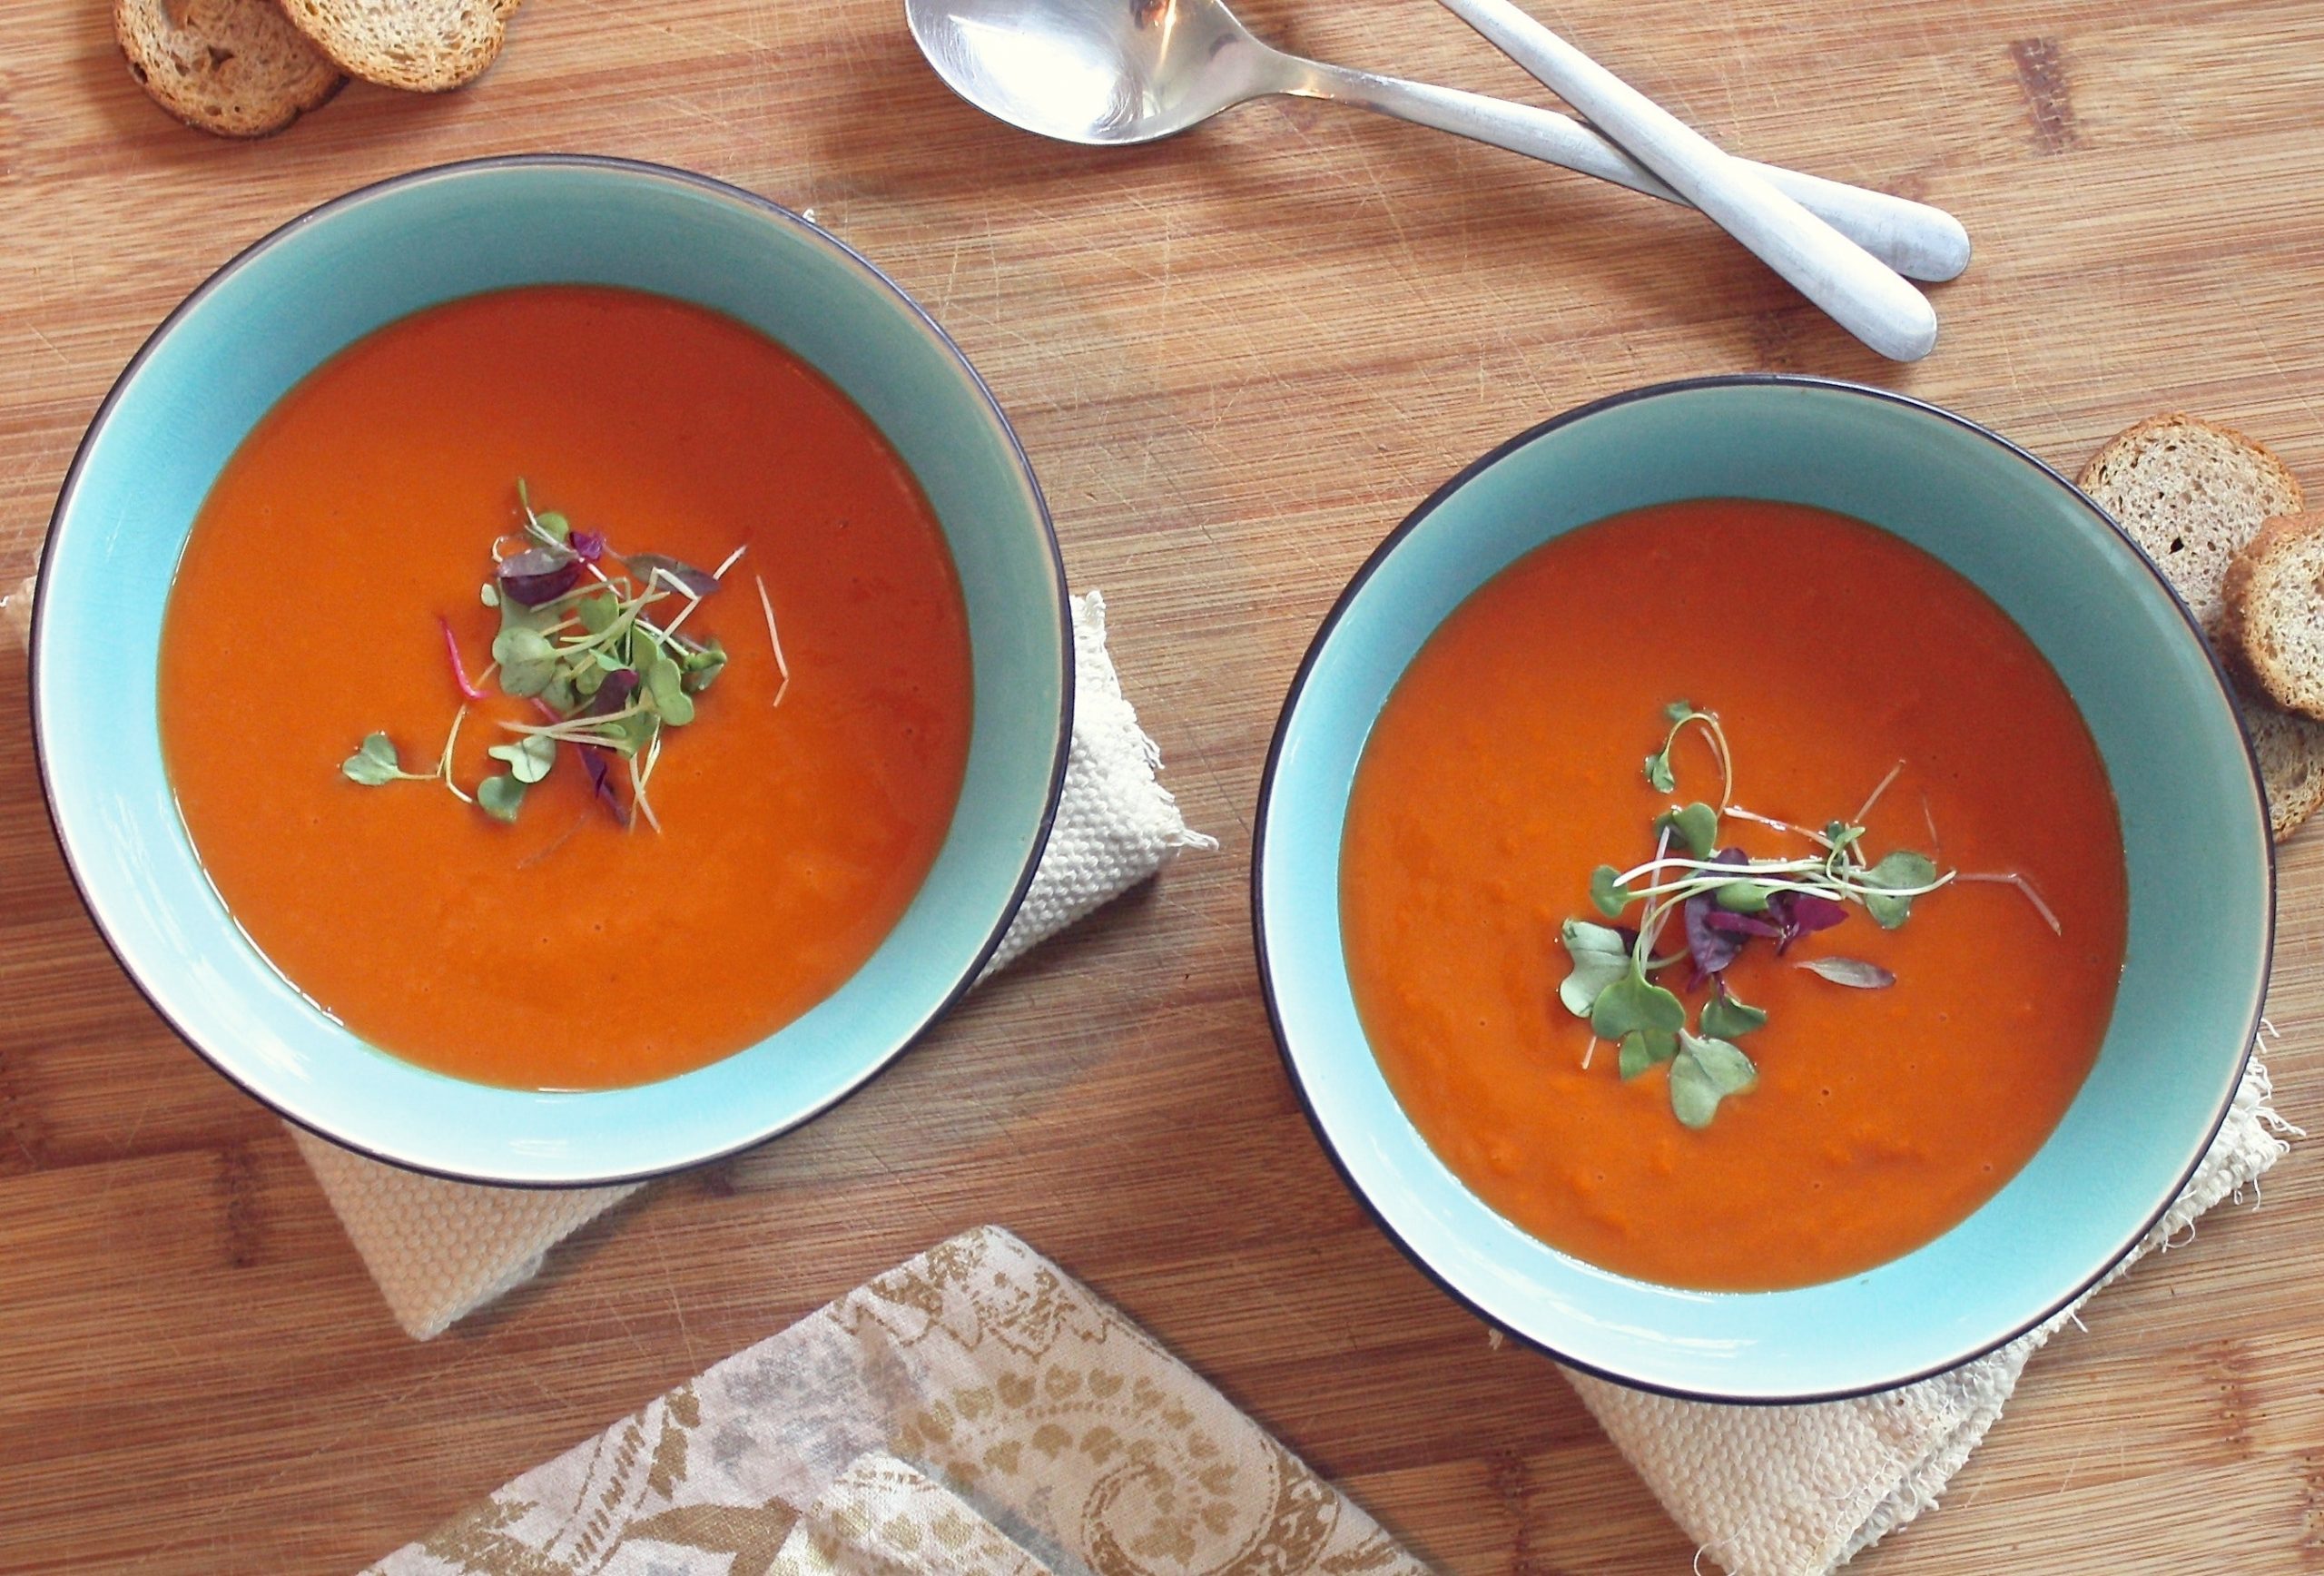 Degusta de una deliciosa sopa de tomate y ajo